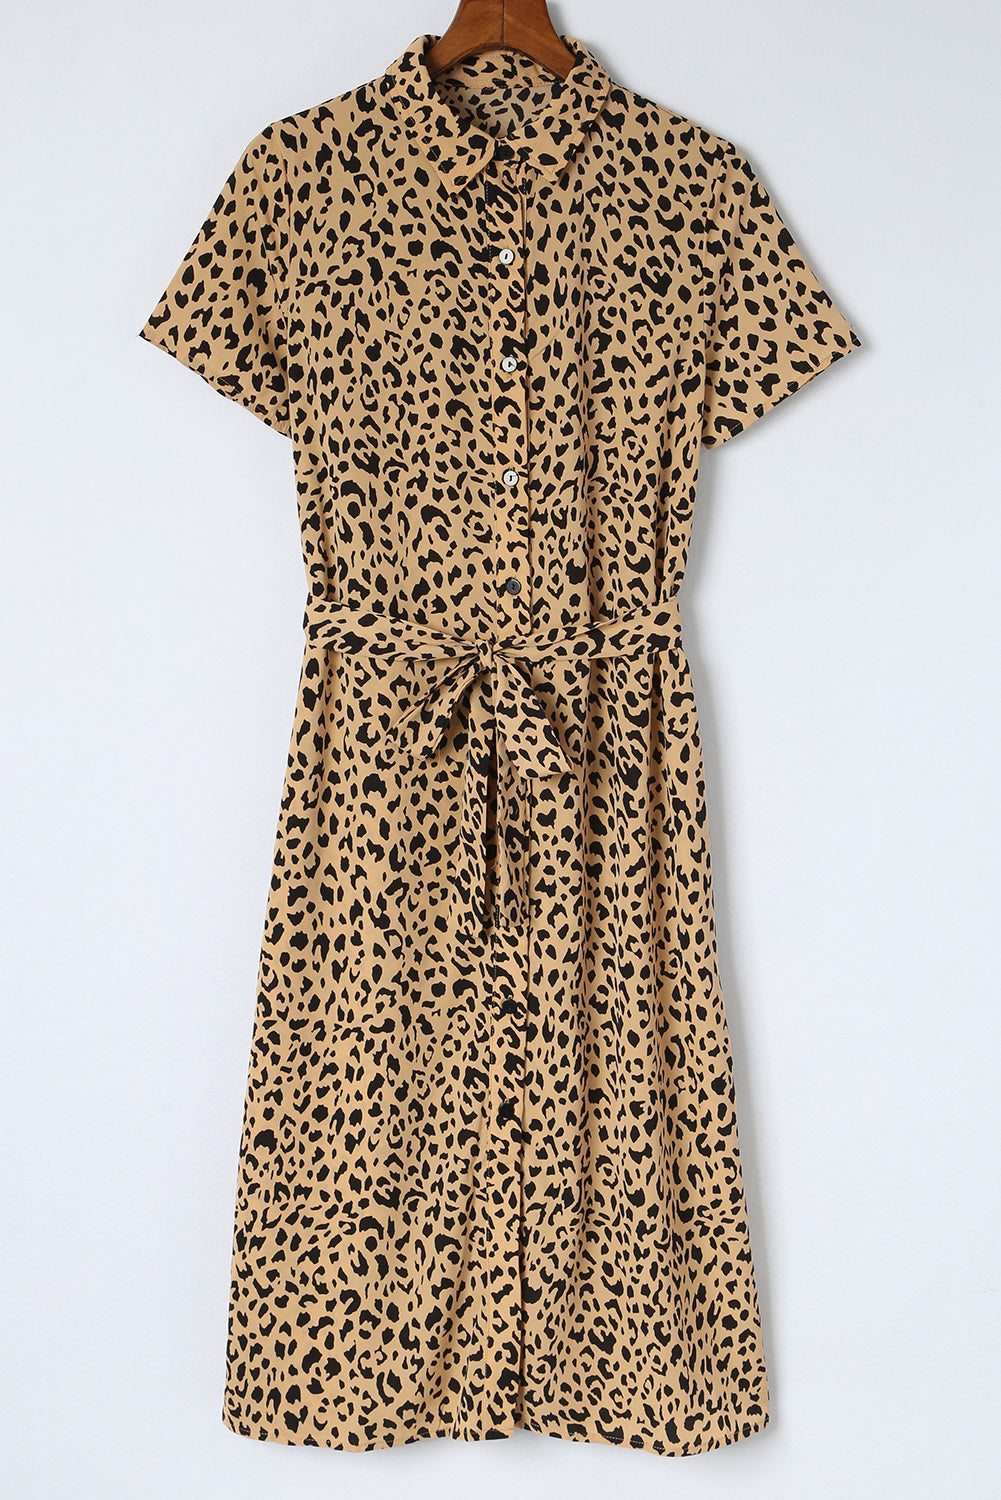 Khaki Leopard Turn-Down Collar Slit Midi Dress